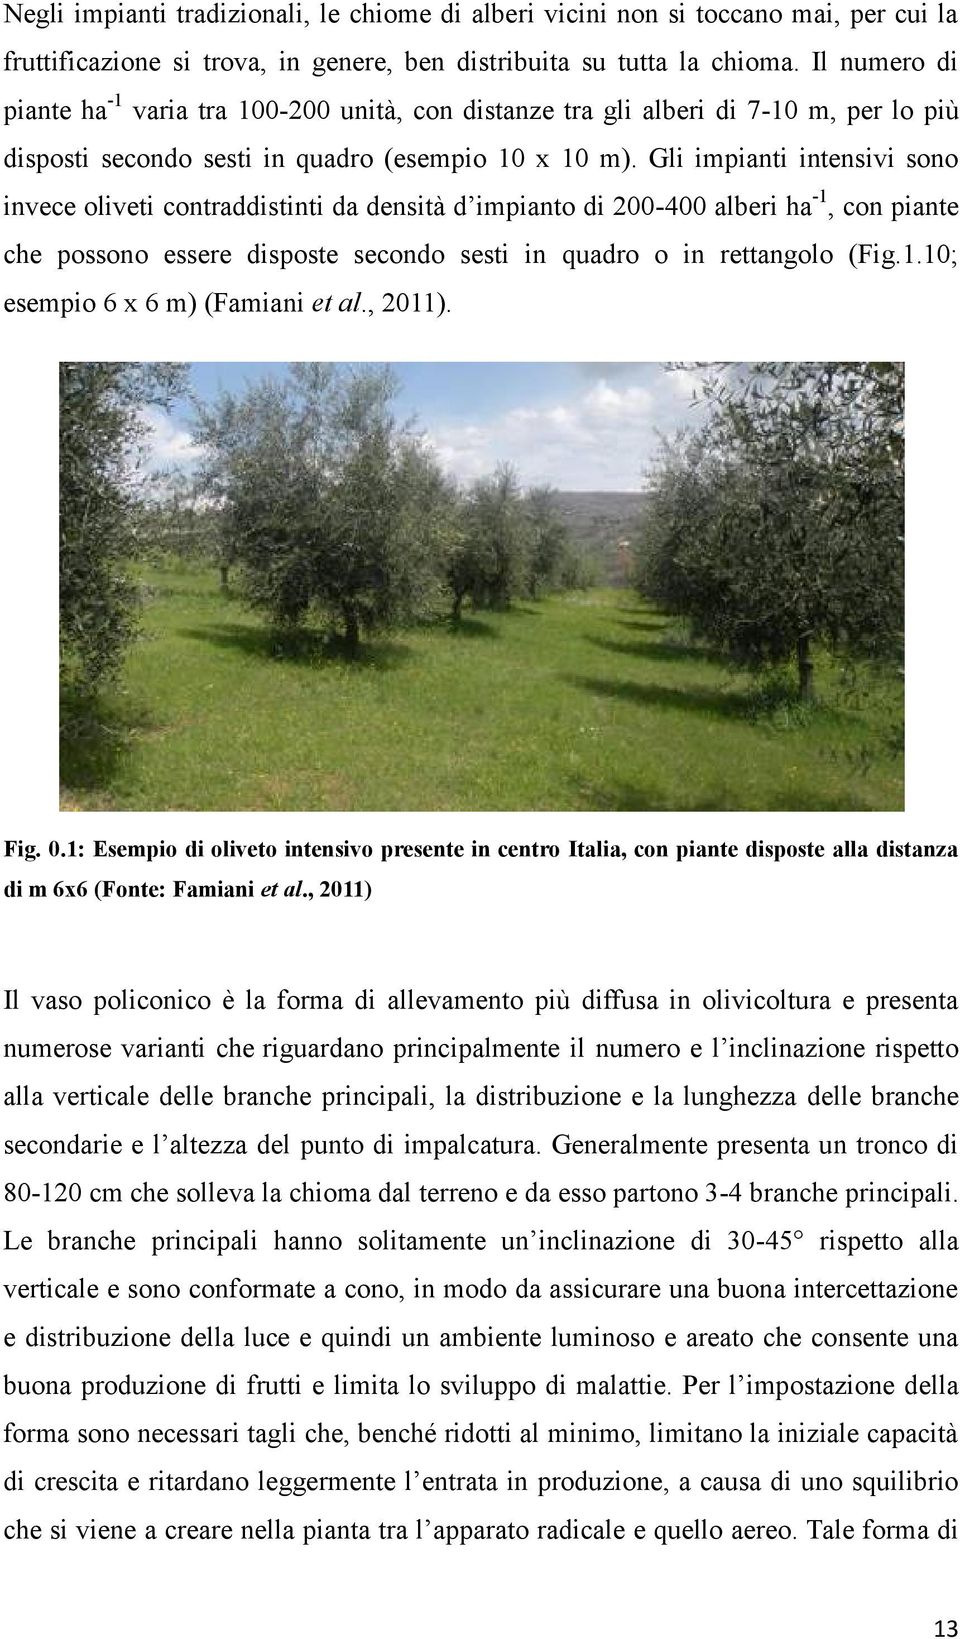 Gli impianti intensivi sono invece oliveti contraddistinti da densità d impianto di 200-400 alberi ha -1, con piante che possono essere disposte secondo sesti in quadro o in rettangolo (Fig.1.10; esempio 6 x 6 m) (Famiani et al.